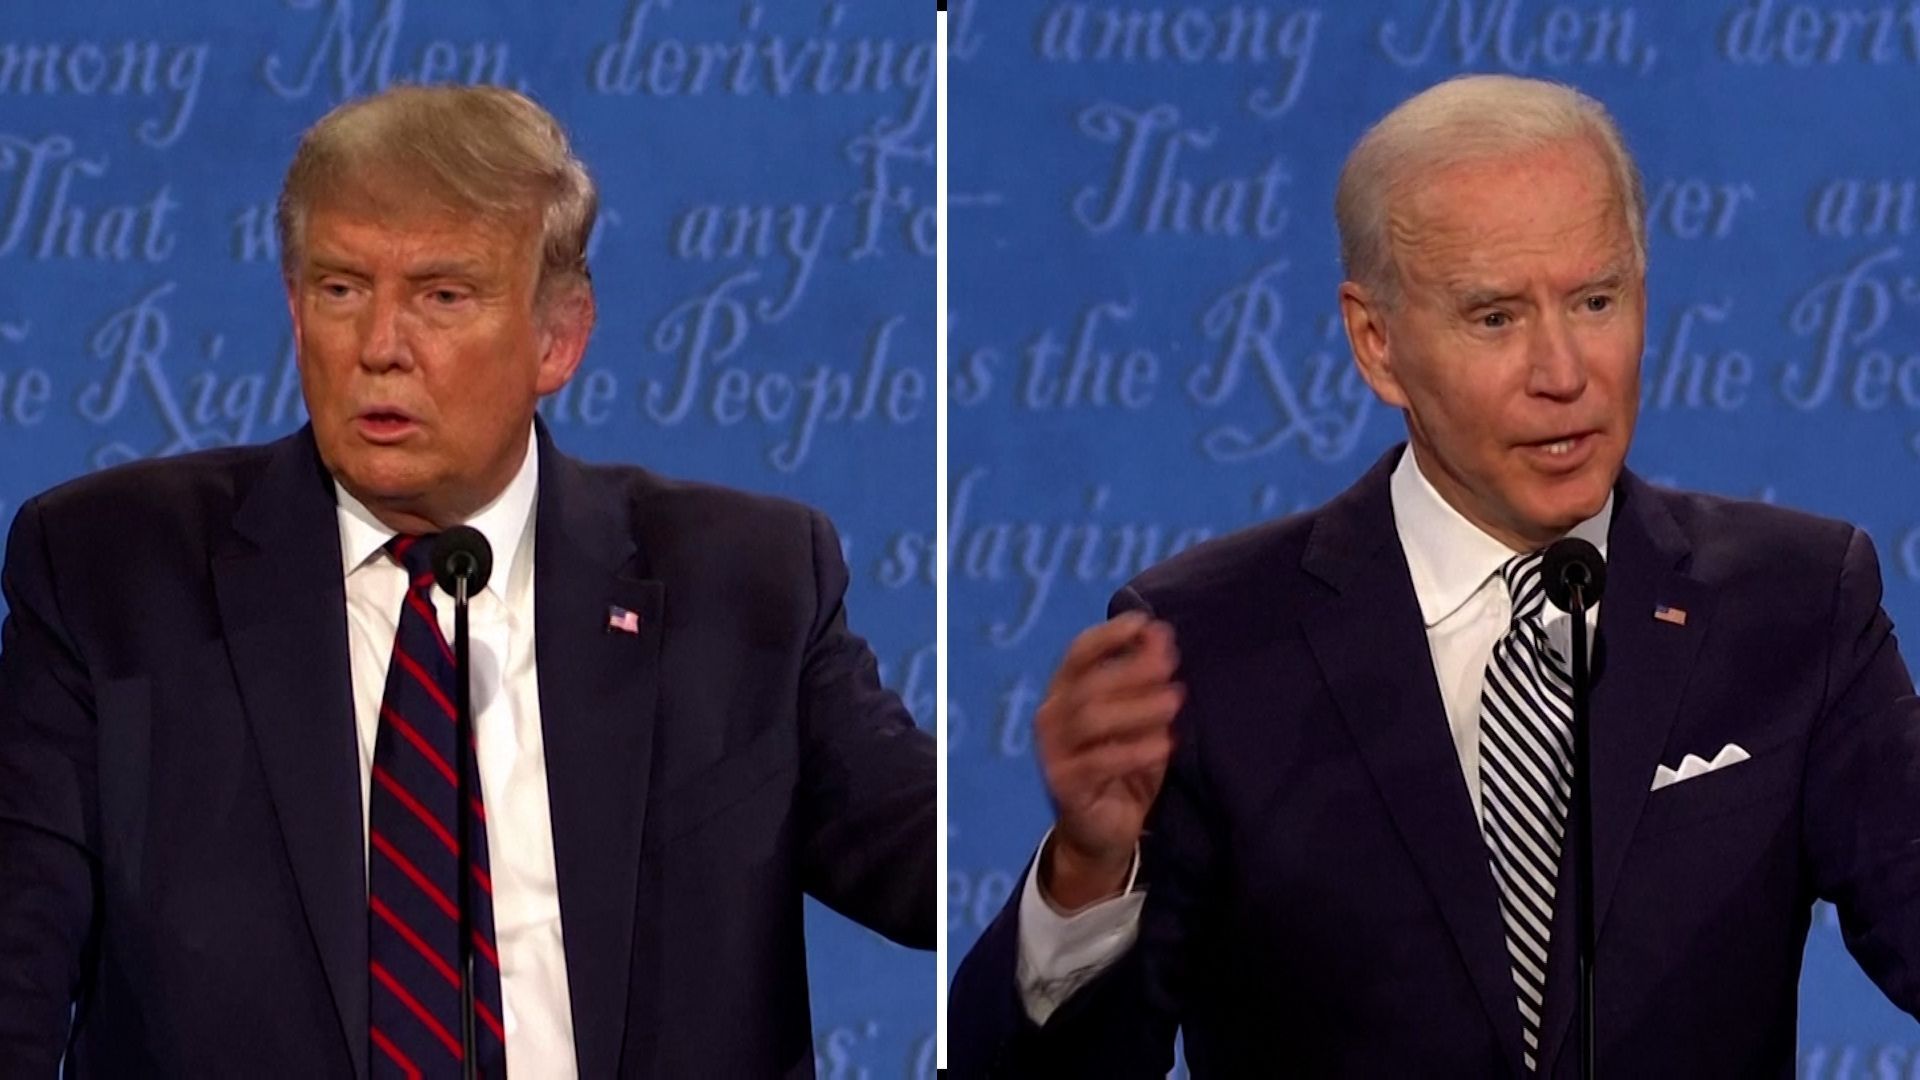 Prezident Donald Trump a jeho demokratický vyzyvatel Joe Biden v první předvolební debatě.